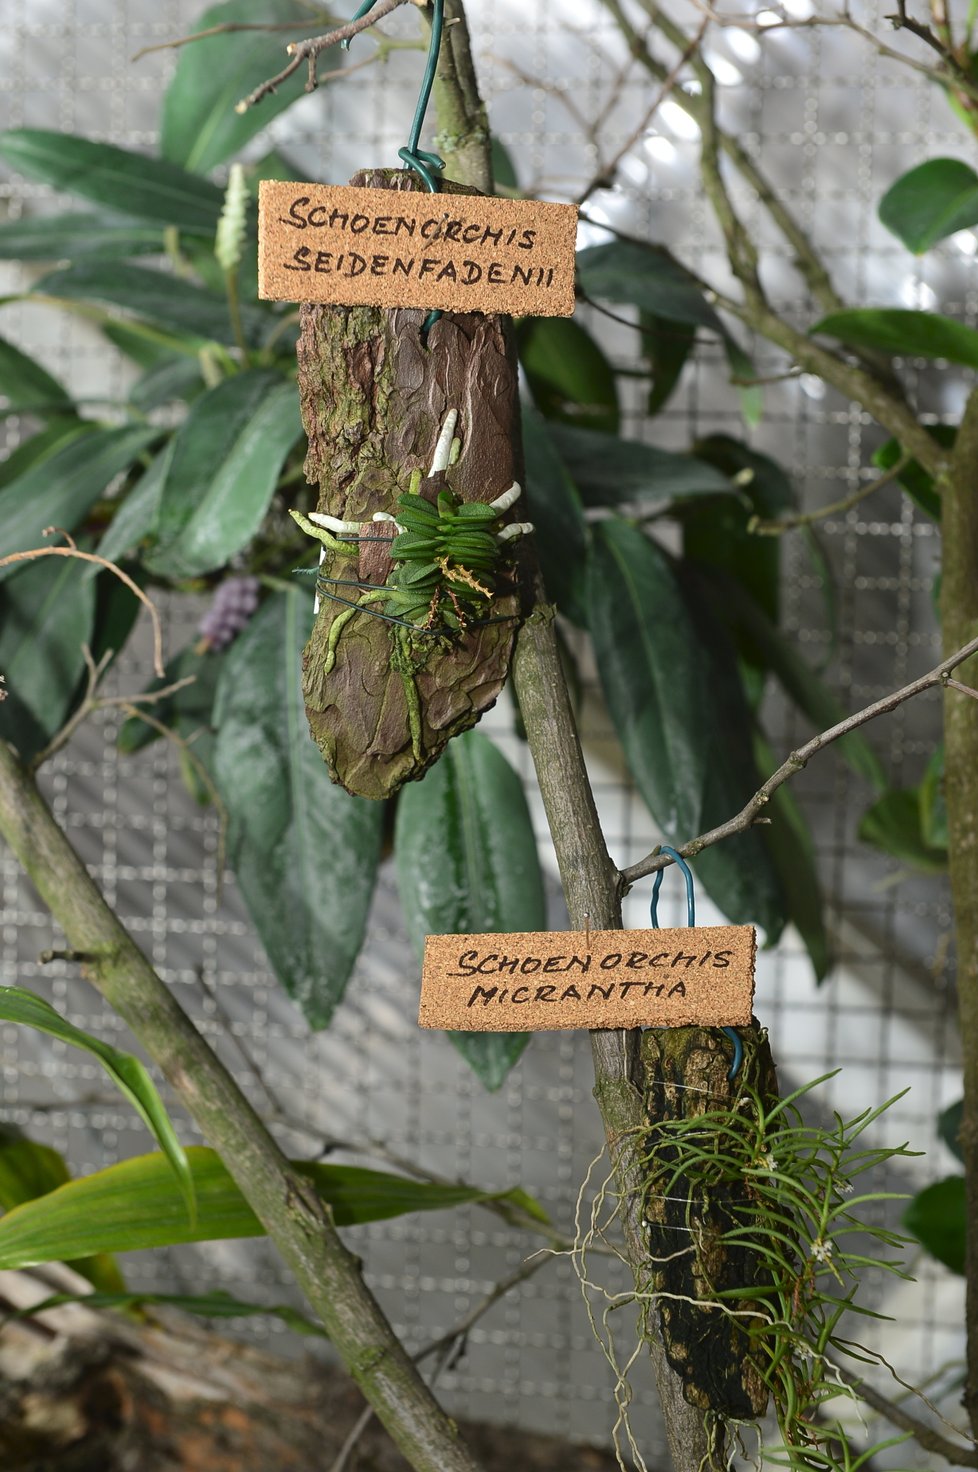 Letošní výstava orchidejí ve Fata Morganě hraje všemi barvami. Ke zhlédnutí bude do 31. března 2019. Poté ji v dubnu a květnu nahradí originální výstava tropických motýlů.